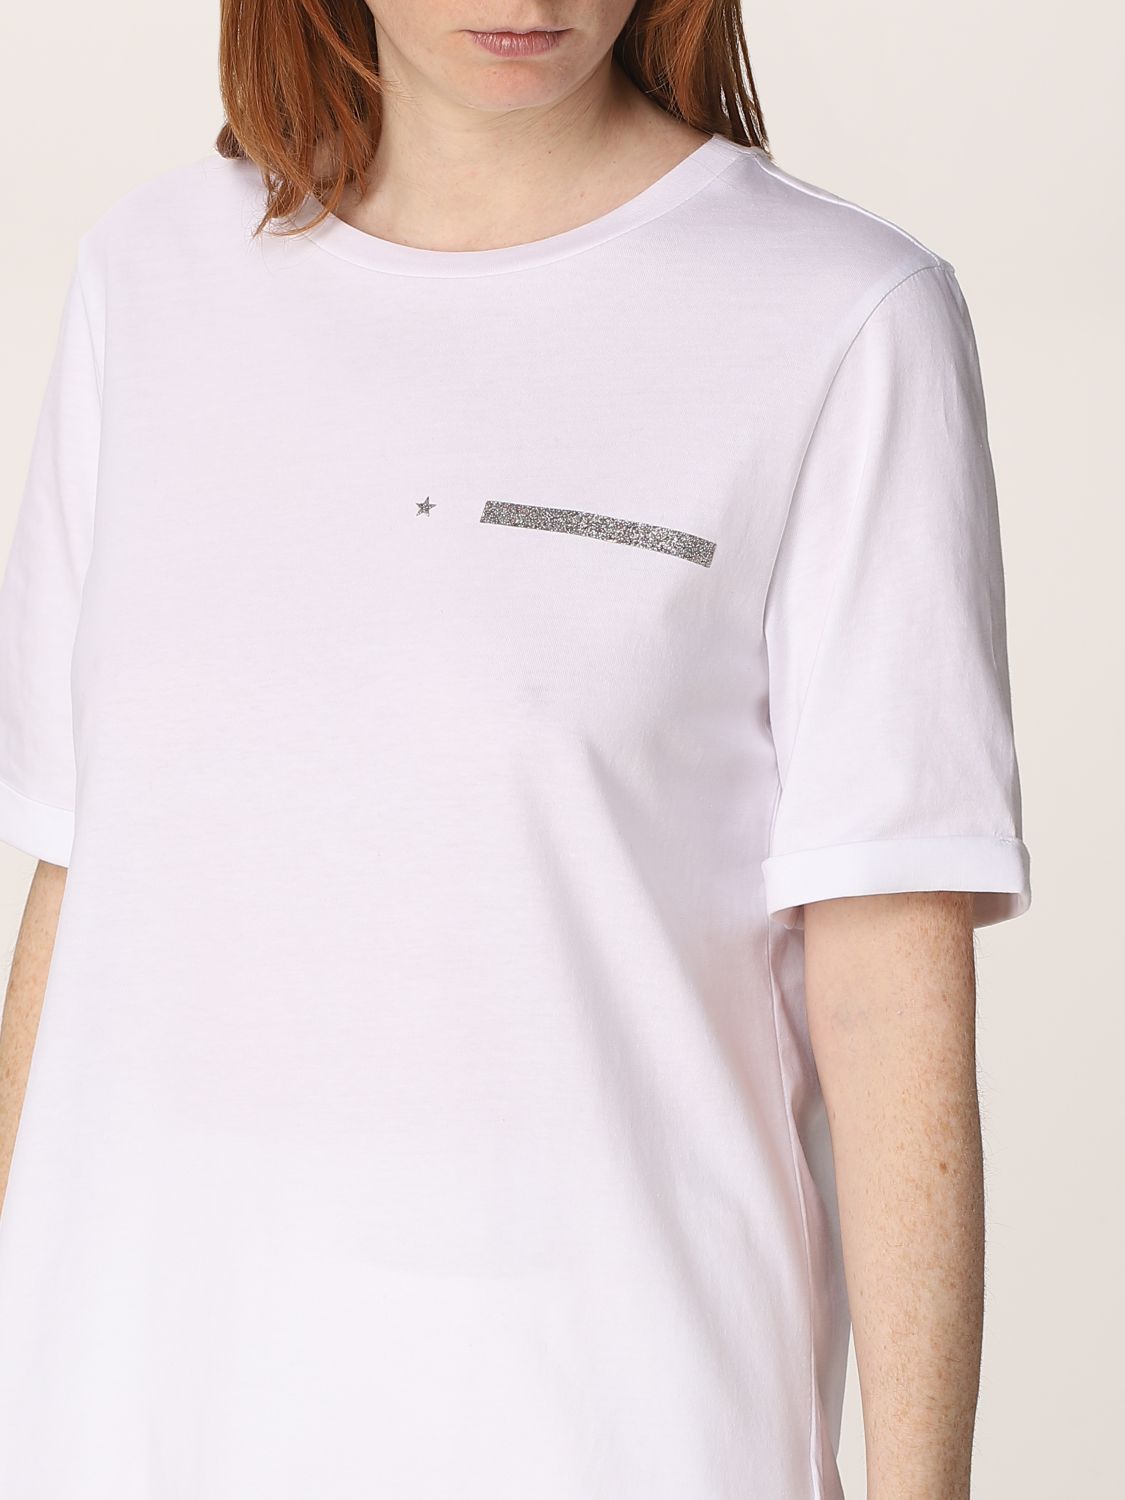 T-shirt Lorena Antoniazzi: T-shirt Lorena Antoniazzi in cotone bianco 3